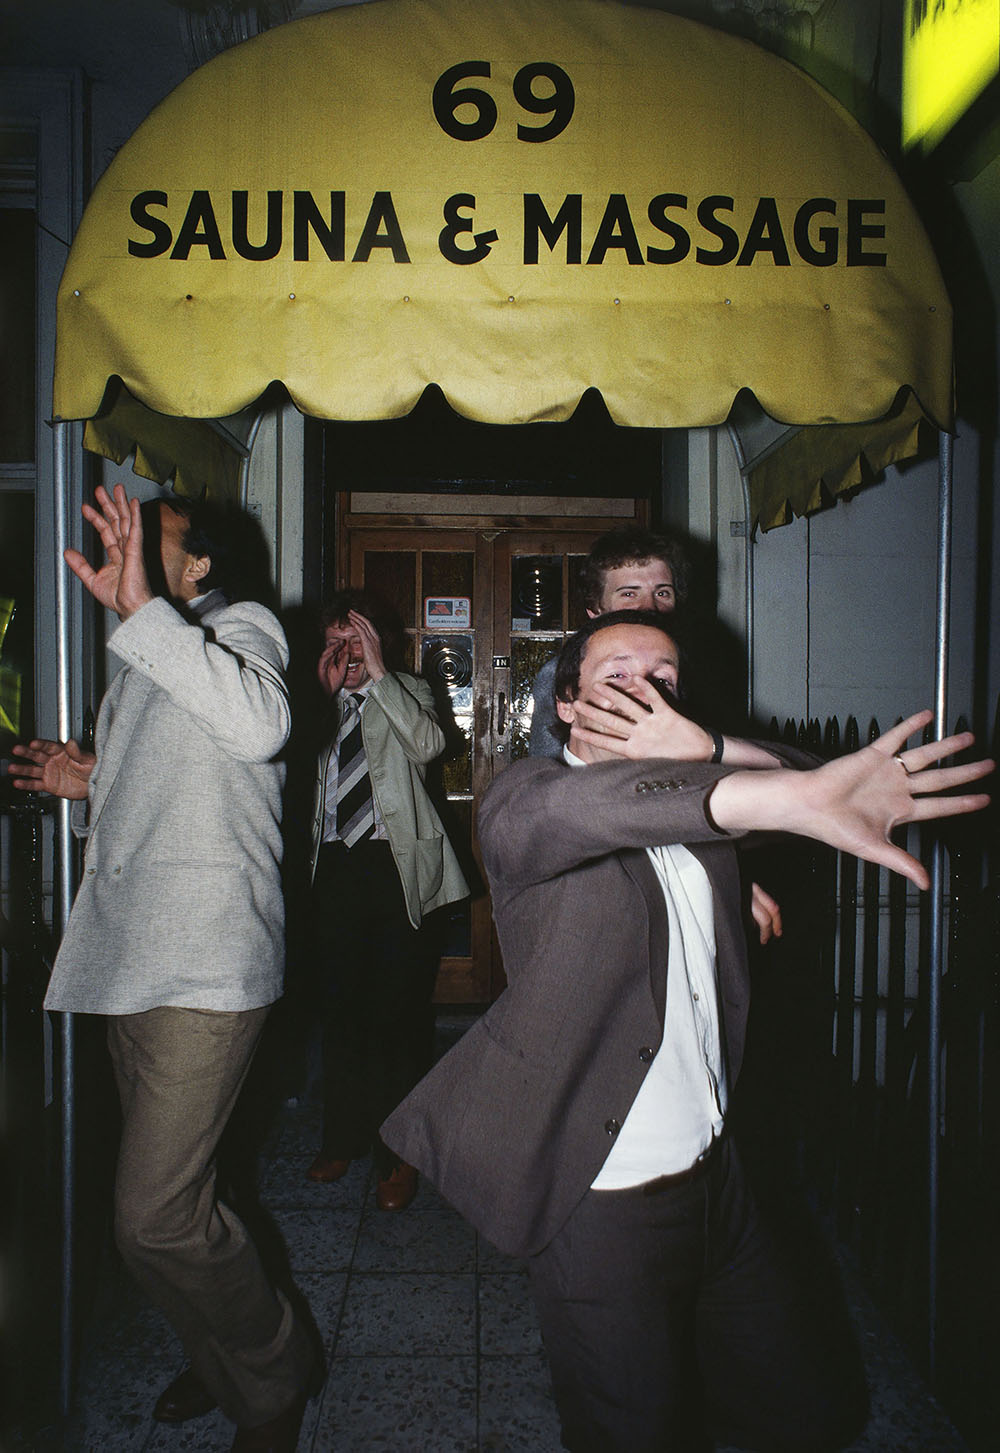 William Klein "Men hiding their faces / 69 Sauna & Massage" © William Klein Courtesy of the artist